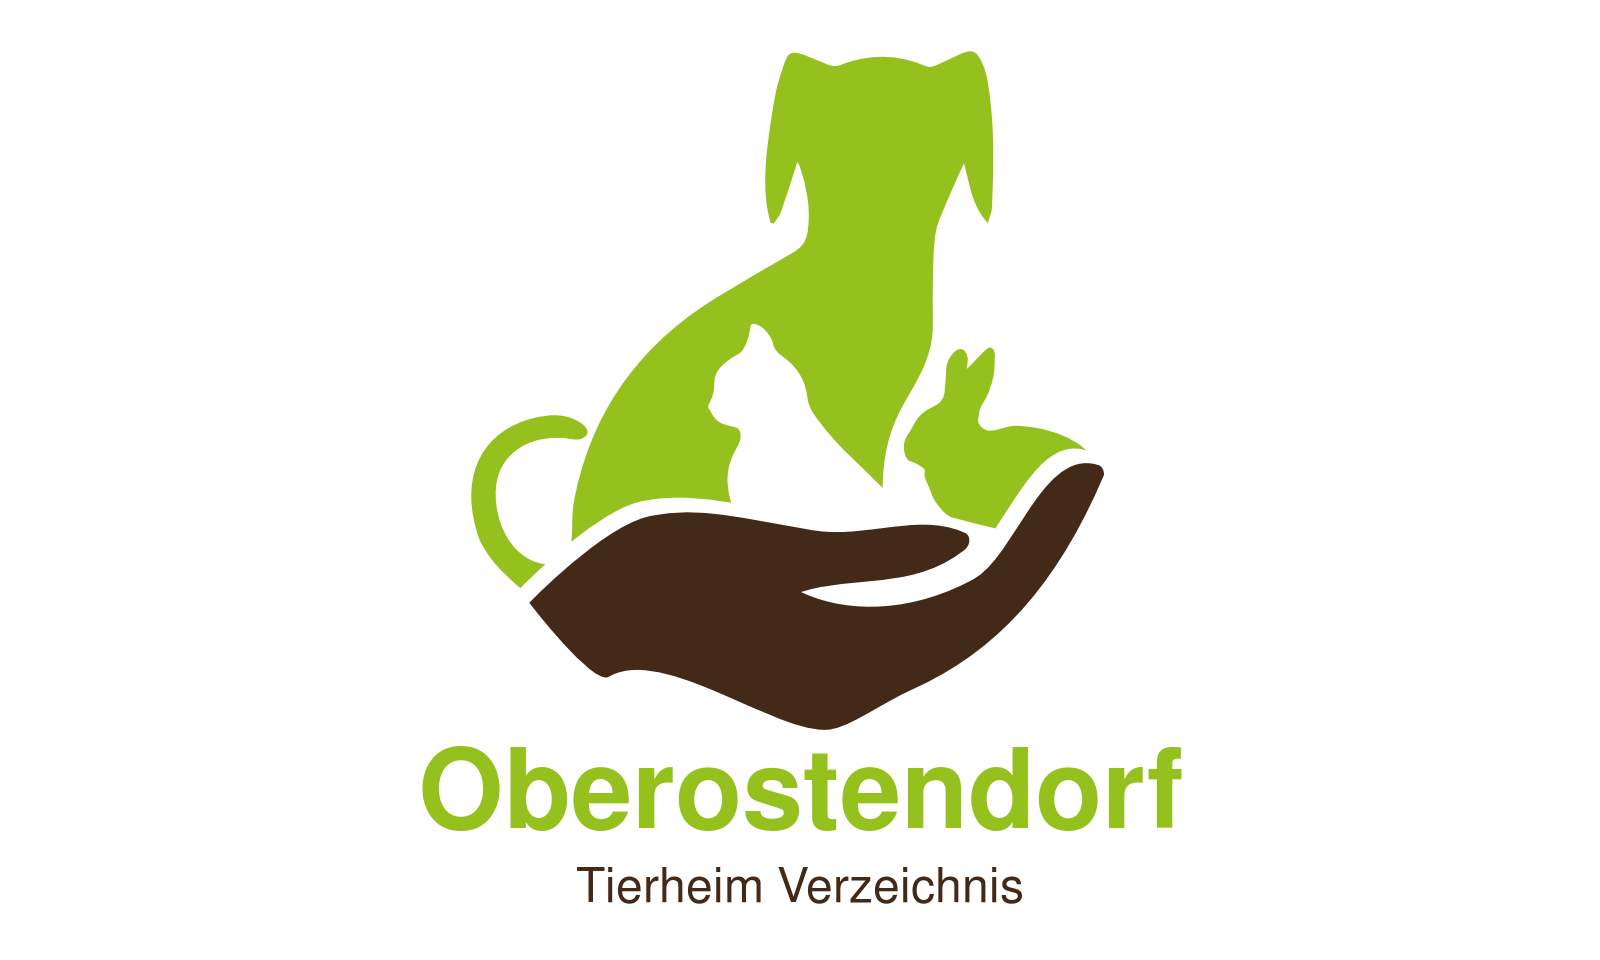 Tierheim Oberostendorf